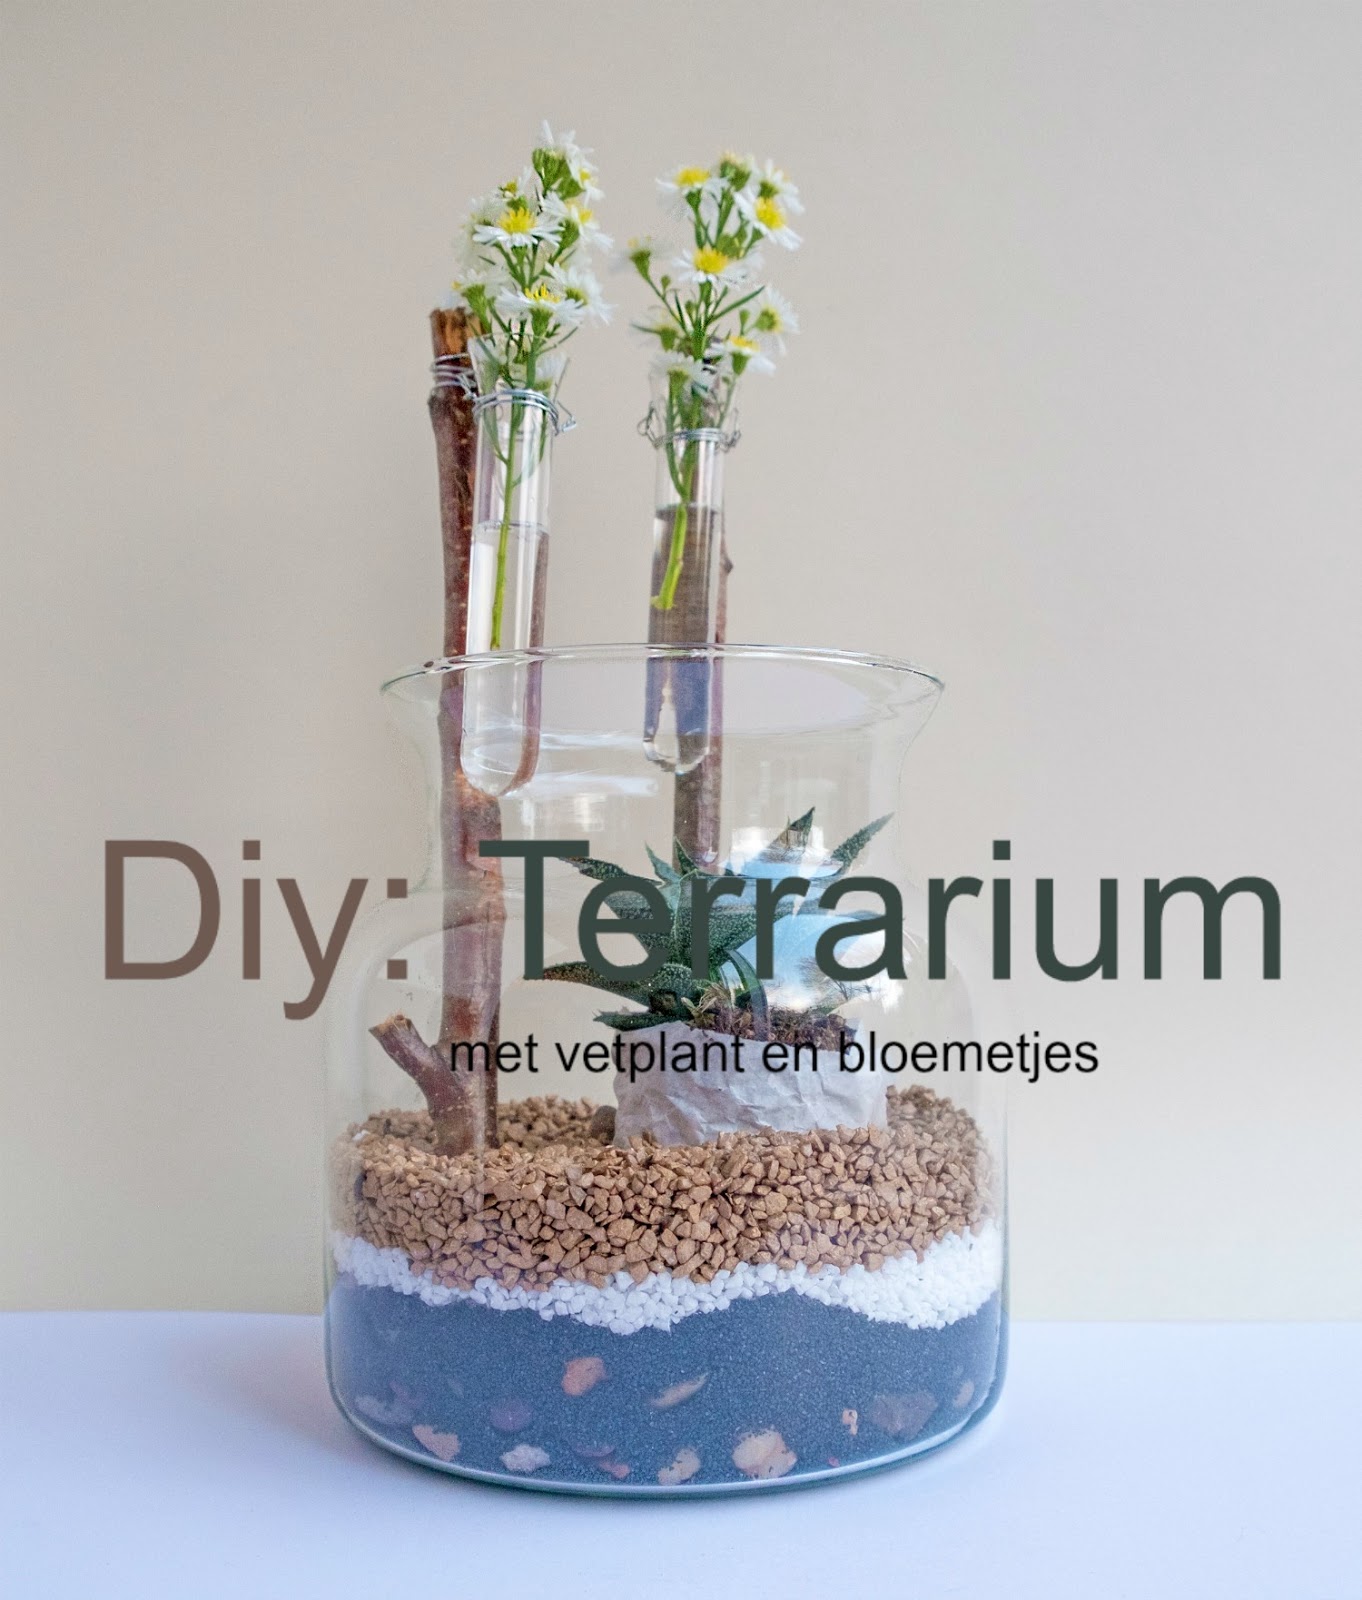 Diy: Terrarium met vetplant en bloemetjes